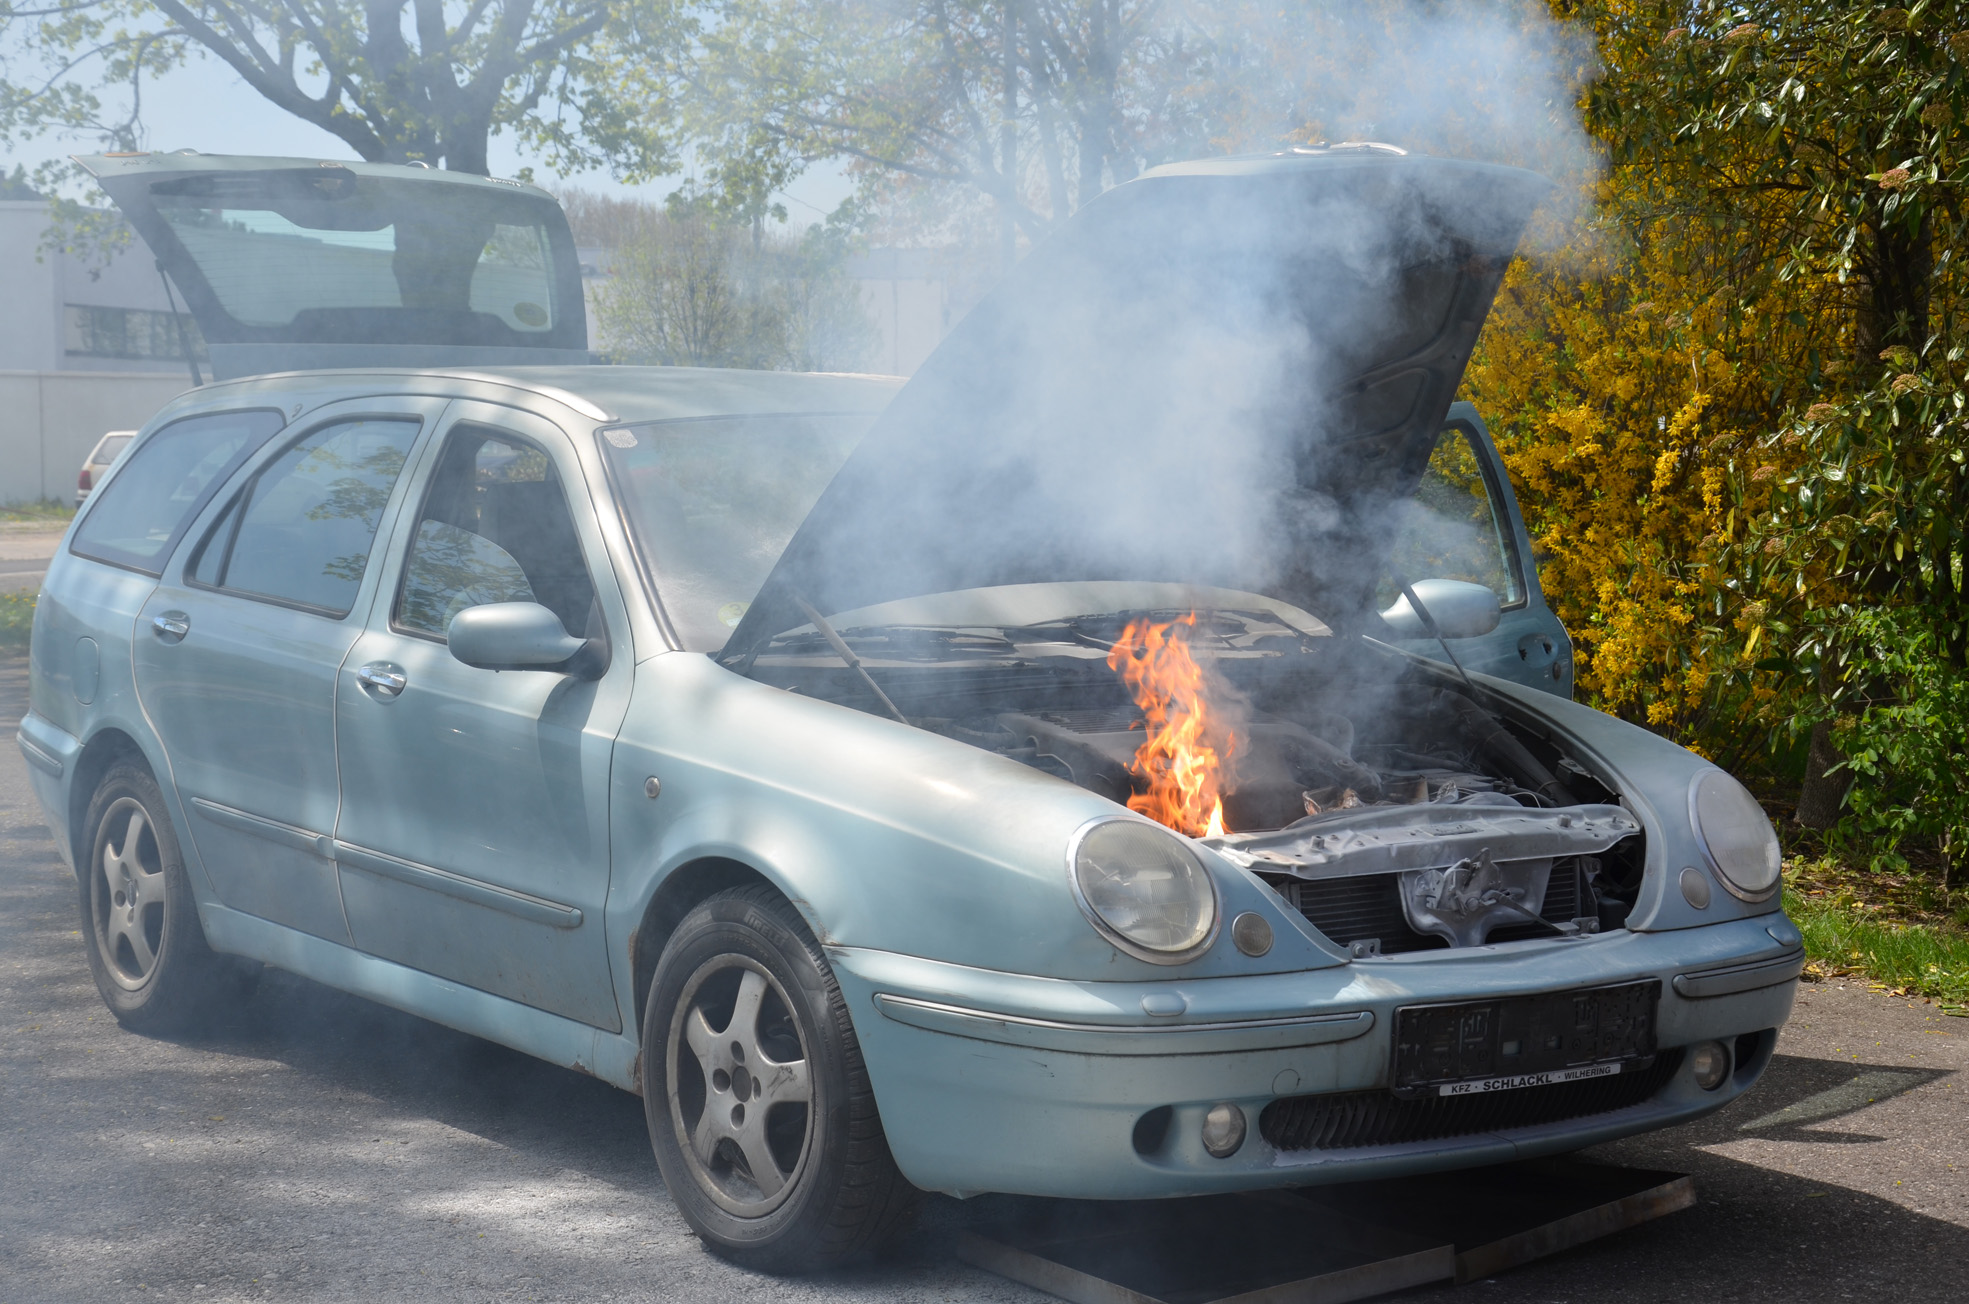 Steigende Gefahr von Verkehrsunfällen und Fahrzeugbränden